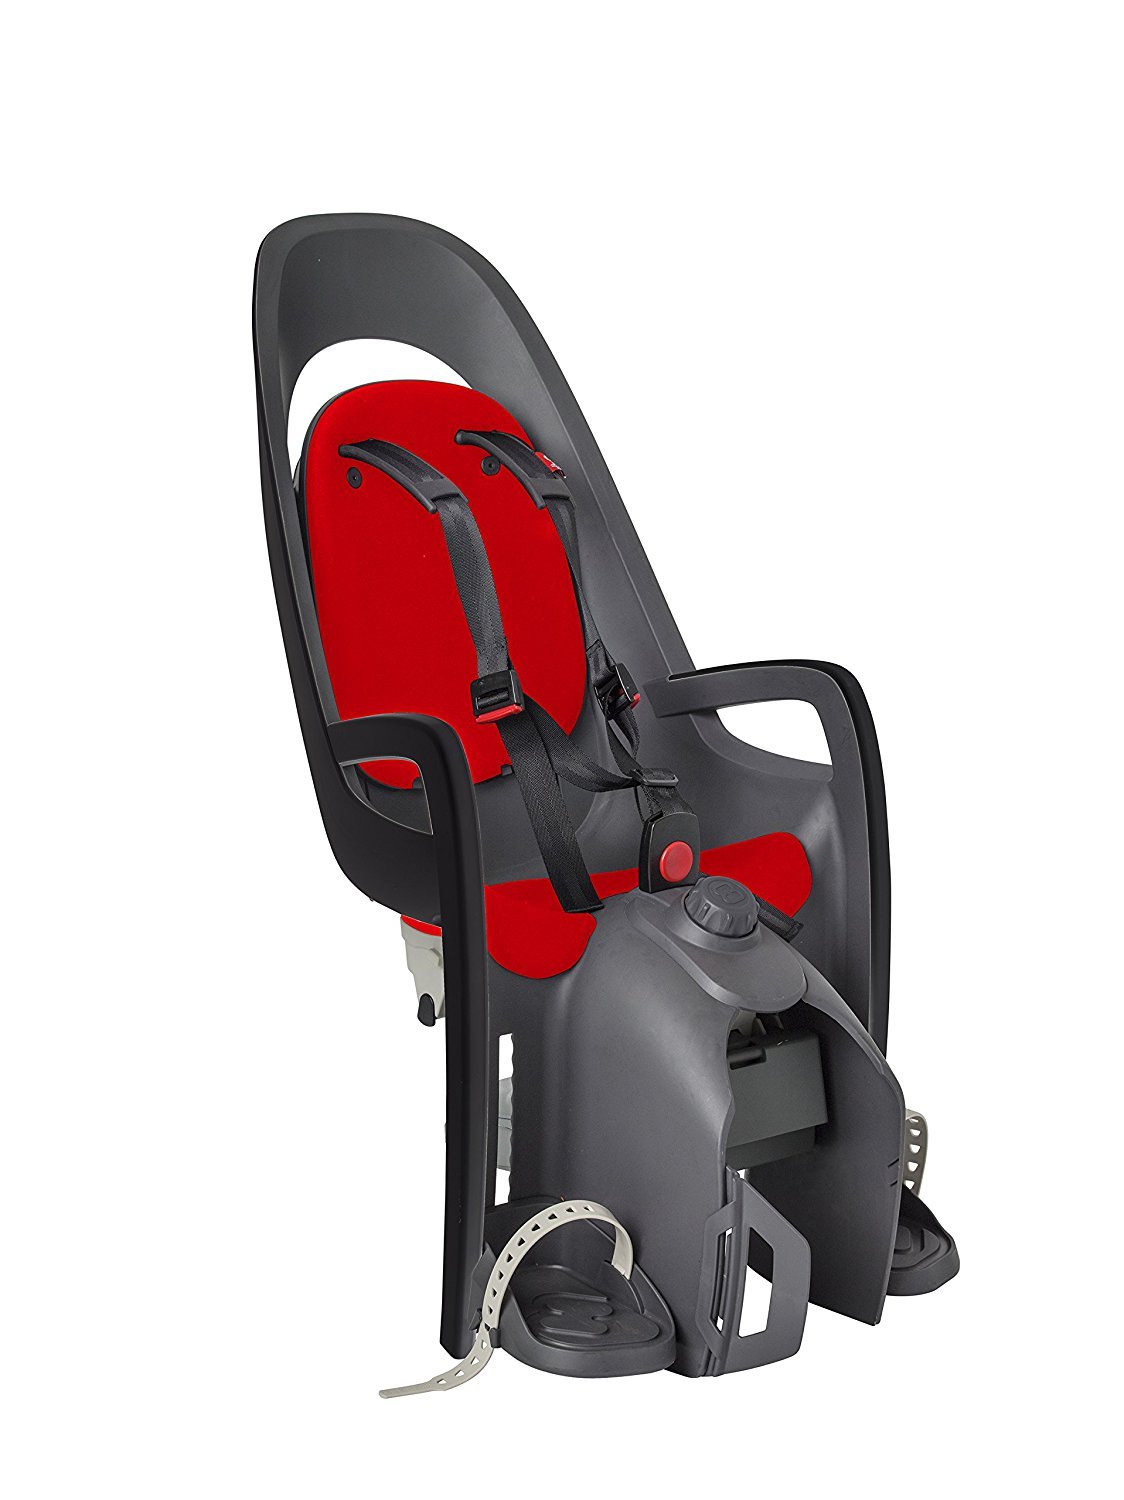 Детское велокресло HAMAX CARESS с адаптером для багажника, серый/красный, до 25 кг, 553013 детское велокресло hamax caress zenith на багажник серый до 22 кг 553041